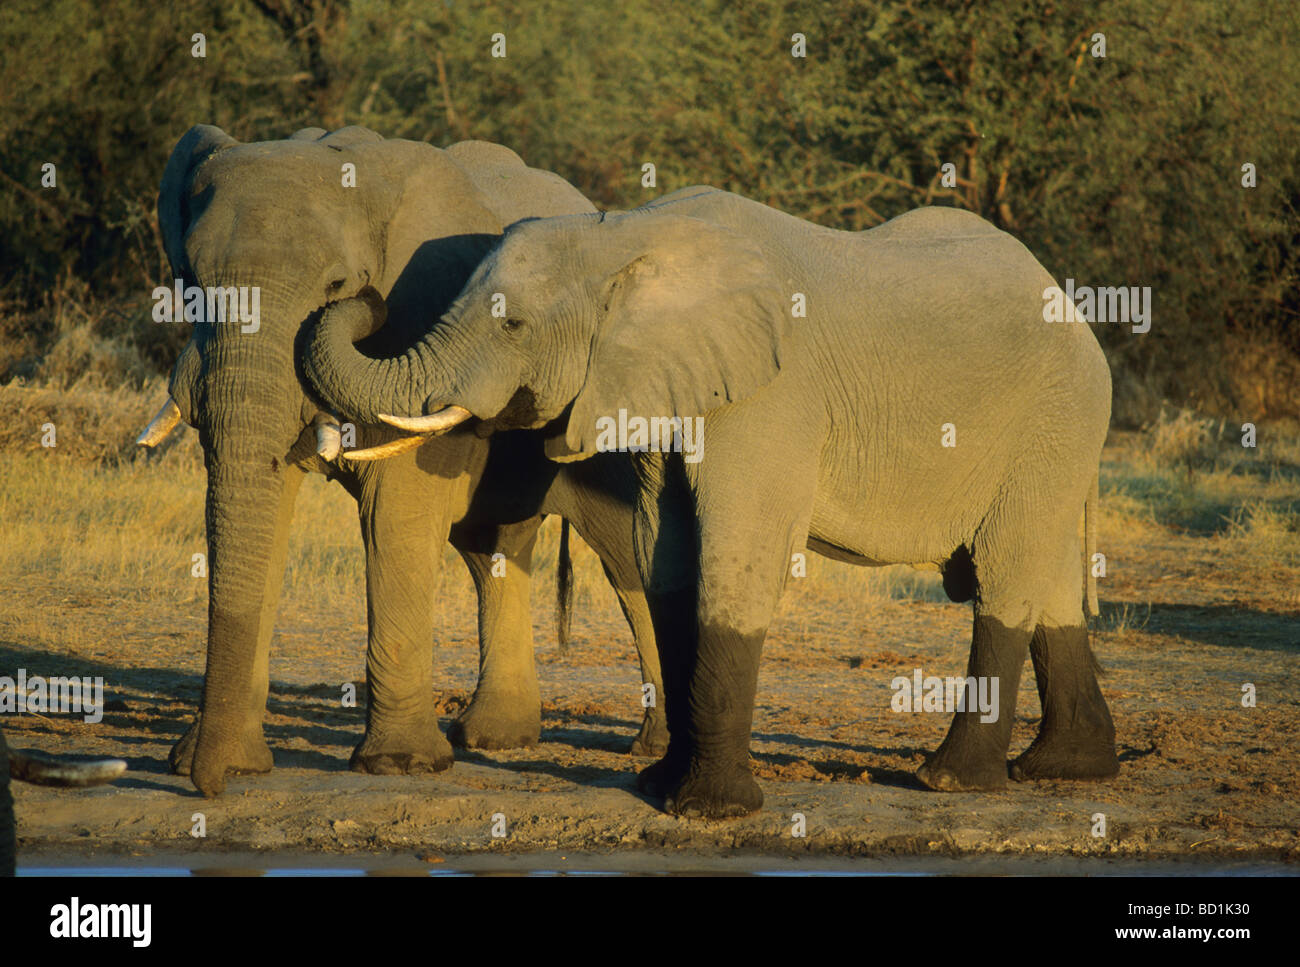 Les éléphants d'Afrique (Loxodonta africana) Message d'accueil avec coffre, Okavango Delta, Botswana Banque D'Images